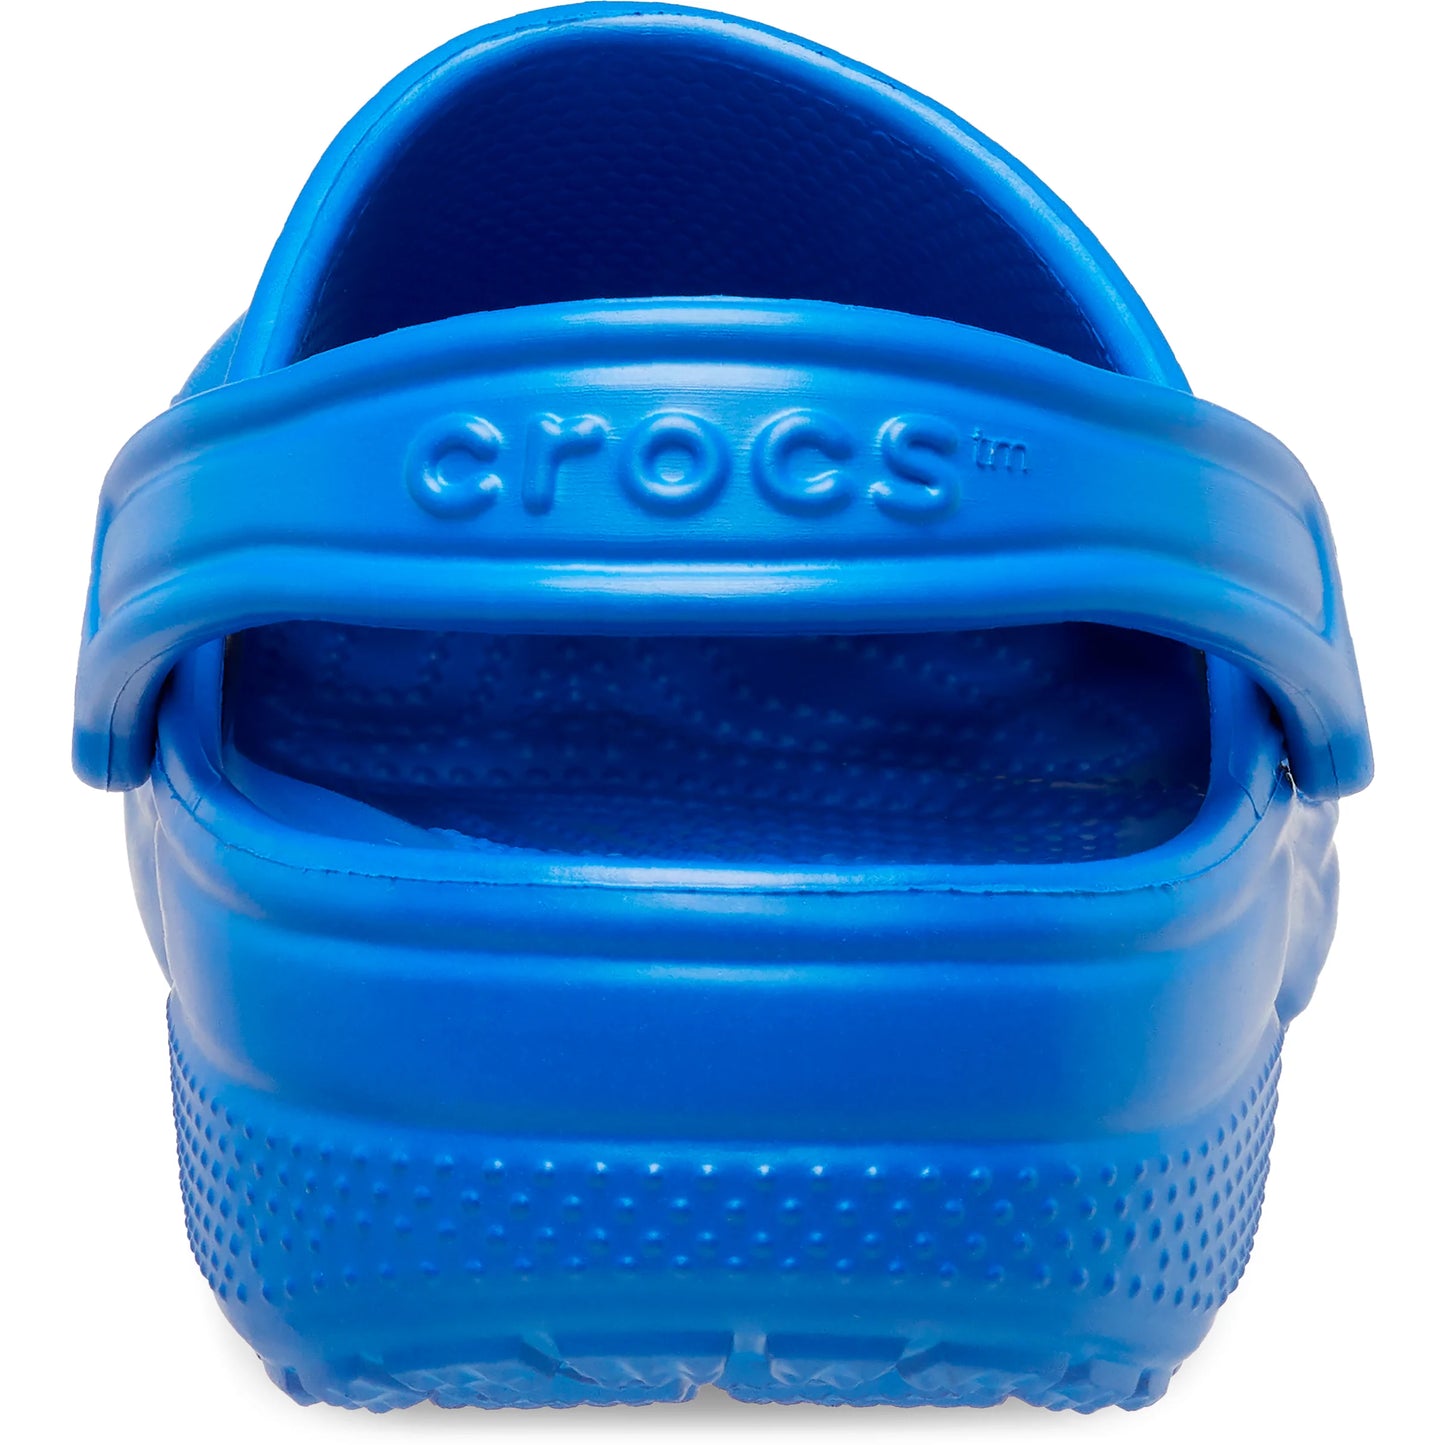 CROCS INFANT CLASSIC CLOG - BLUE BOLT